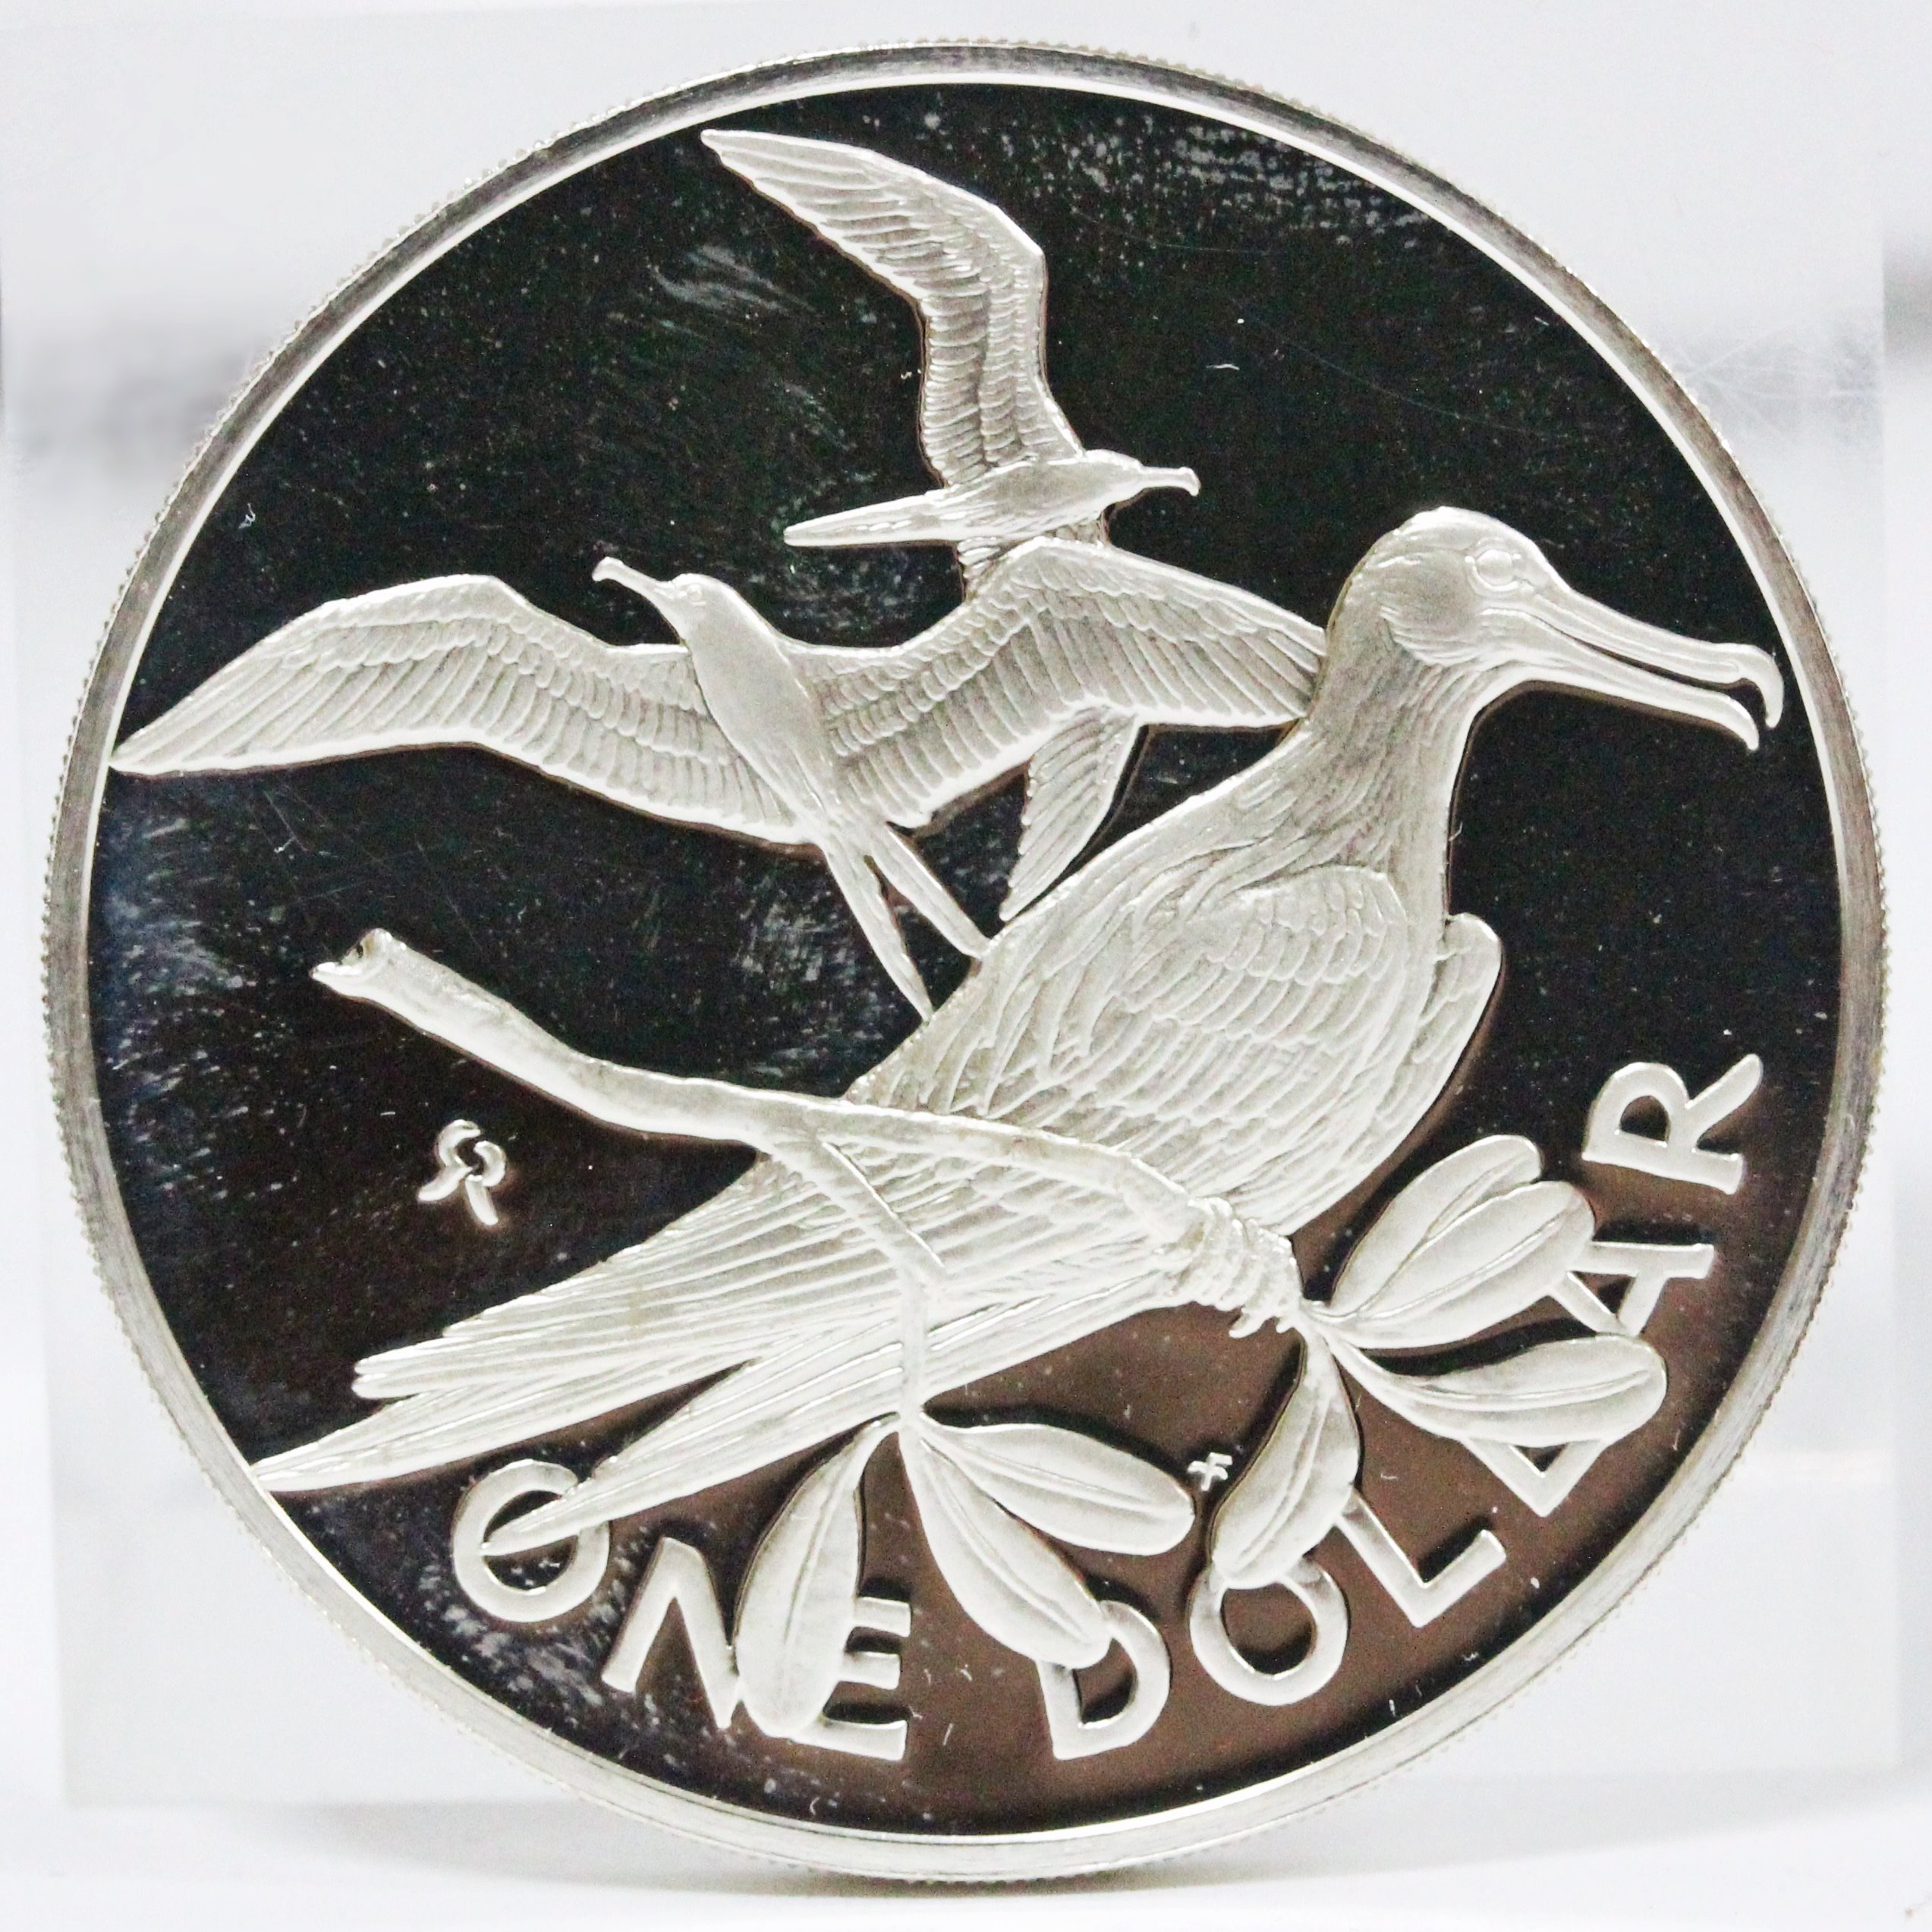 ヴィーナスの誕生 イギリス領ヴァージン諸島 10ドル プルーフ銀貨